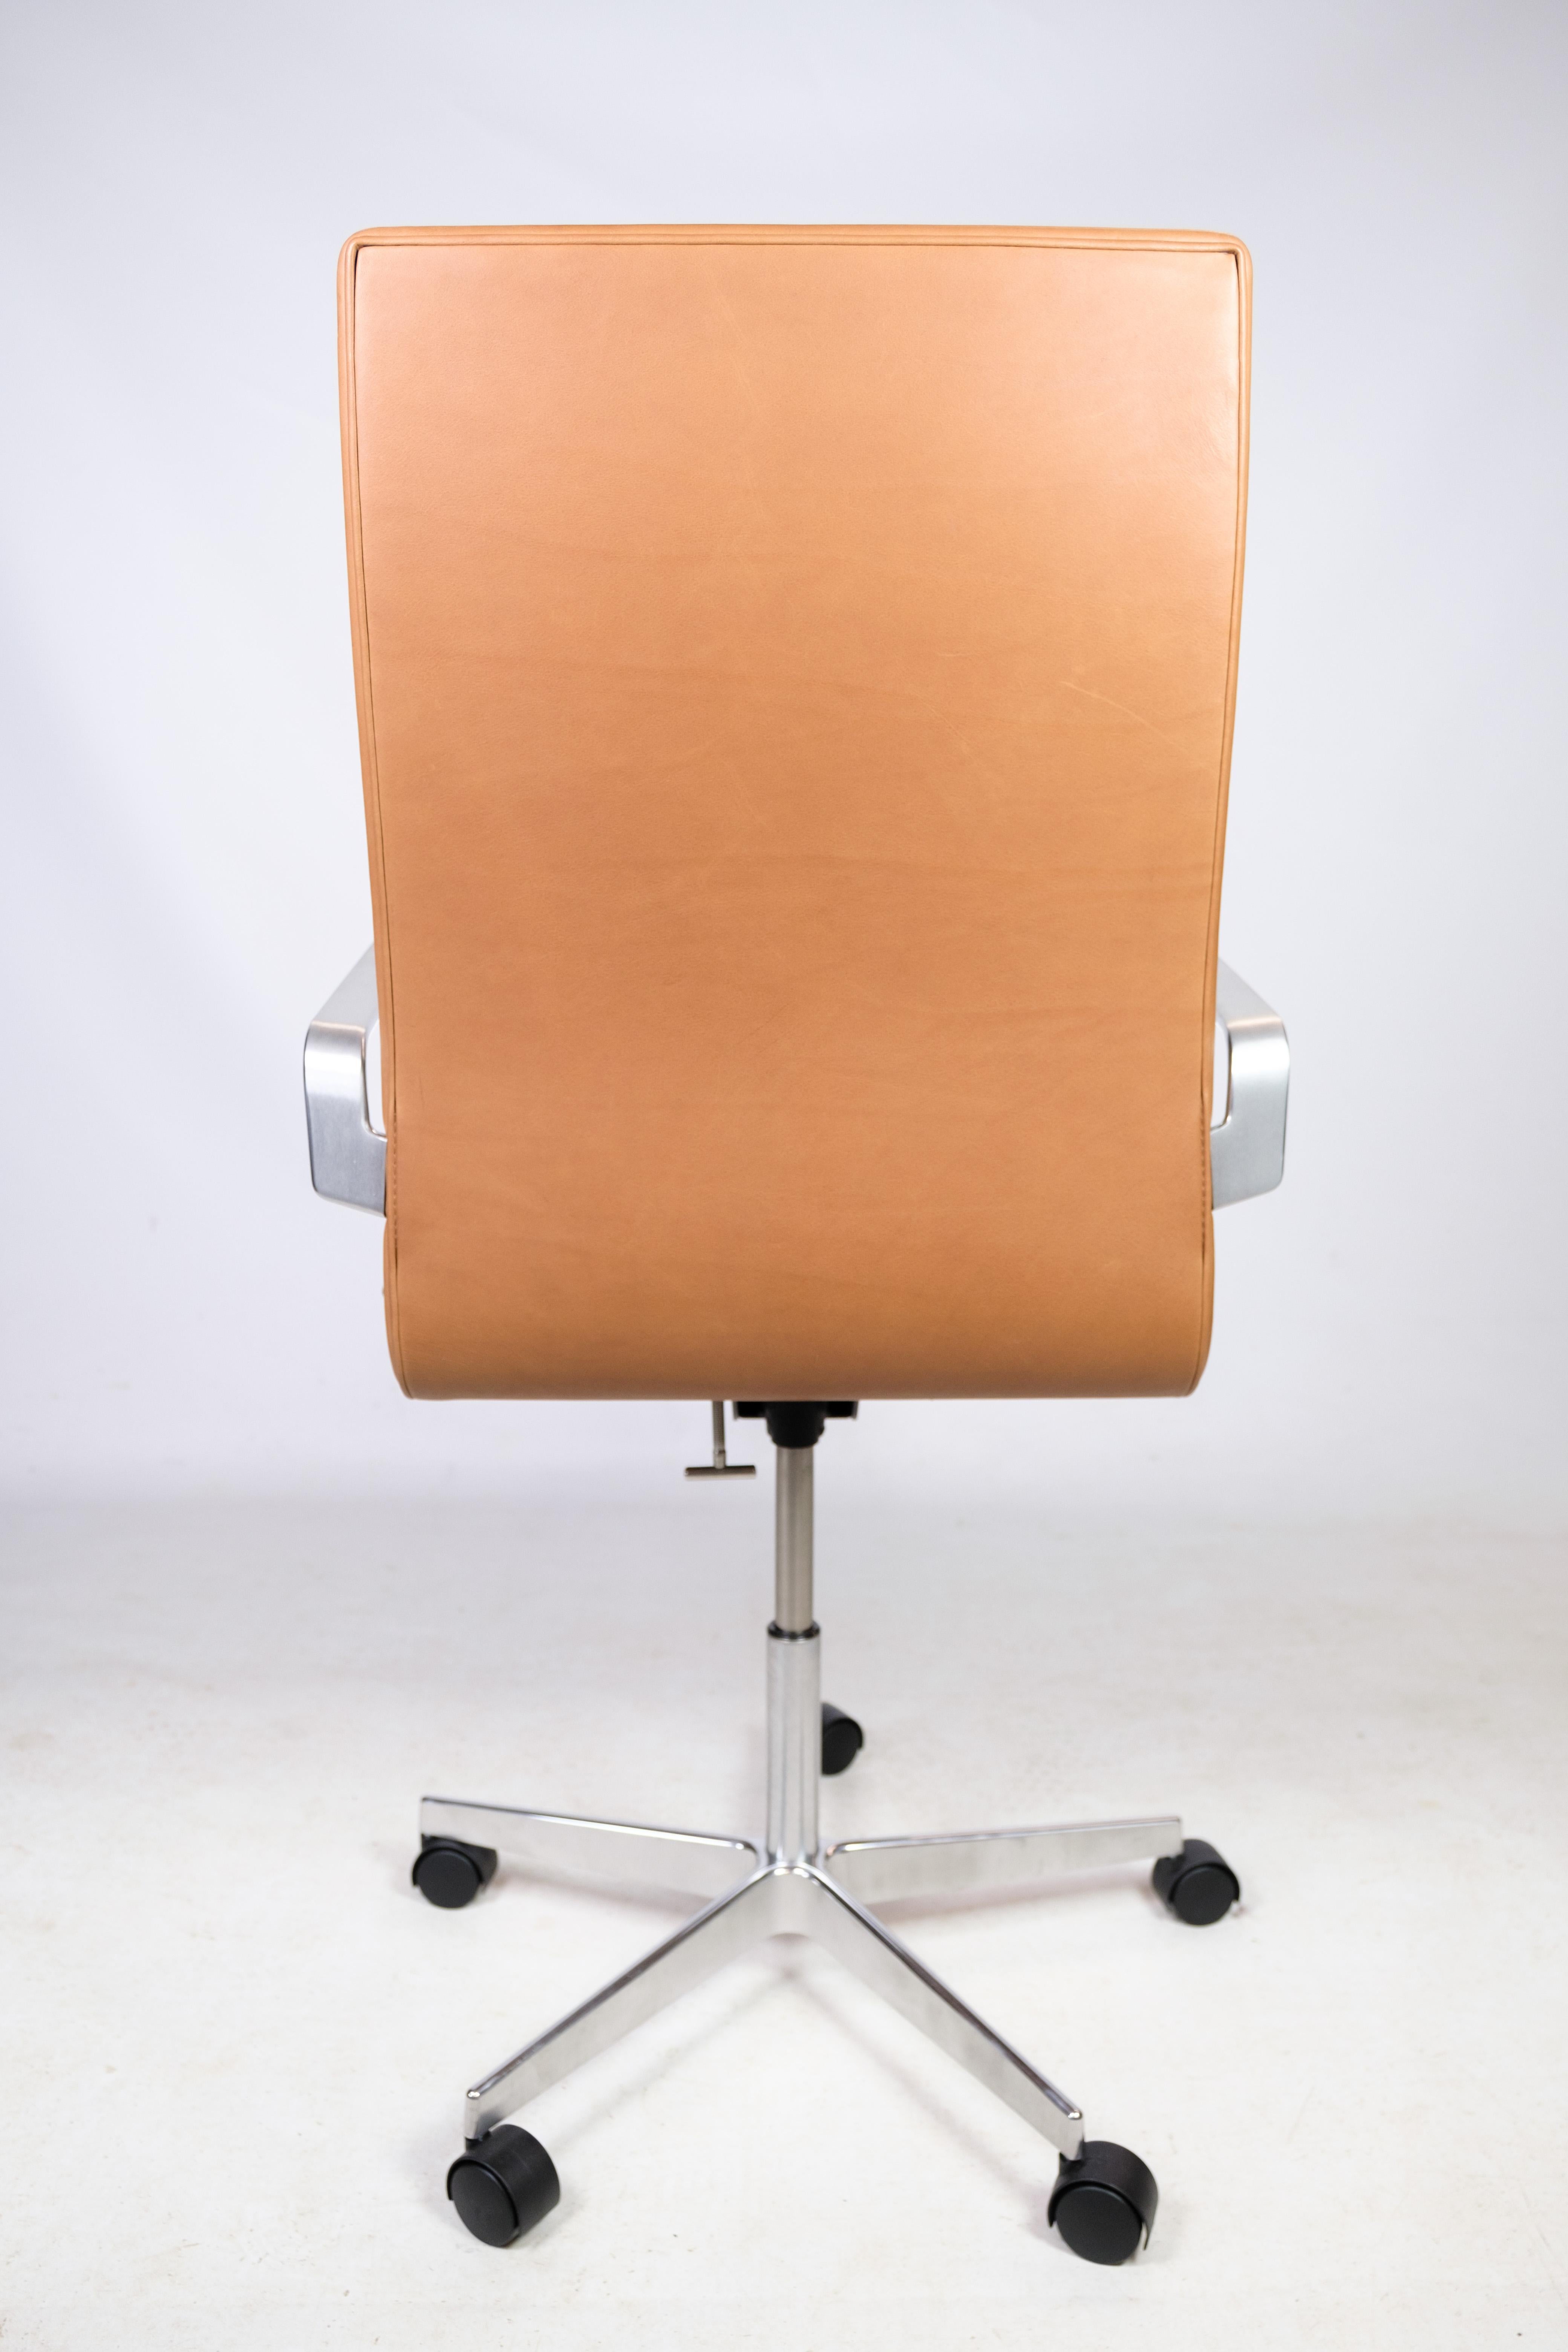 Danois Chaise de bureau Classic, modèle 3293c, cuir cognac, Arne Jacobsen, 1963 en vente